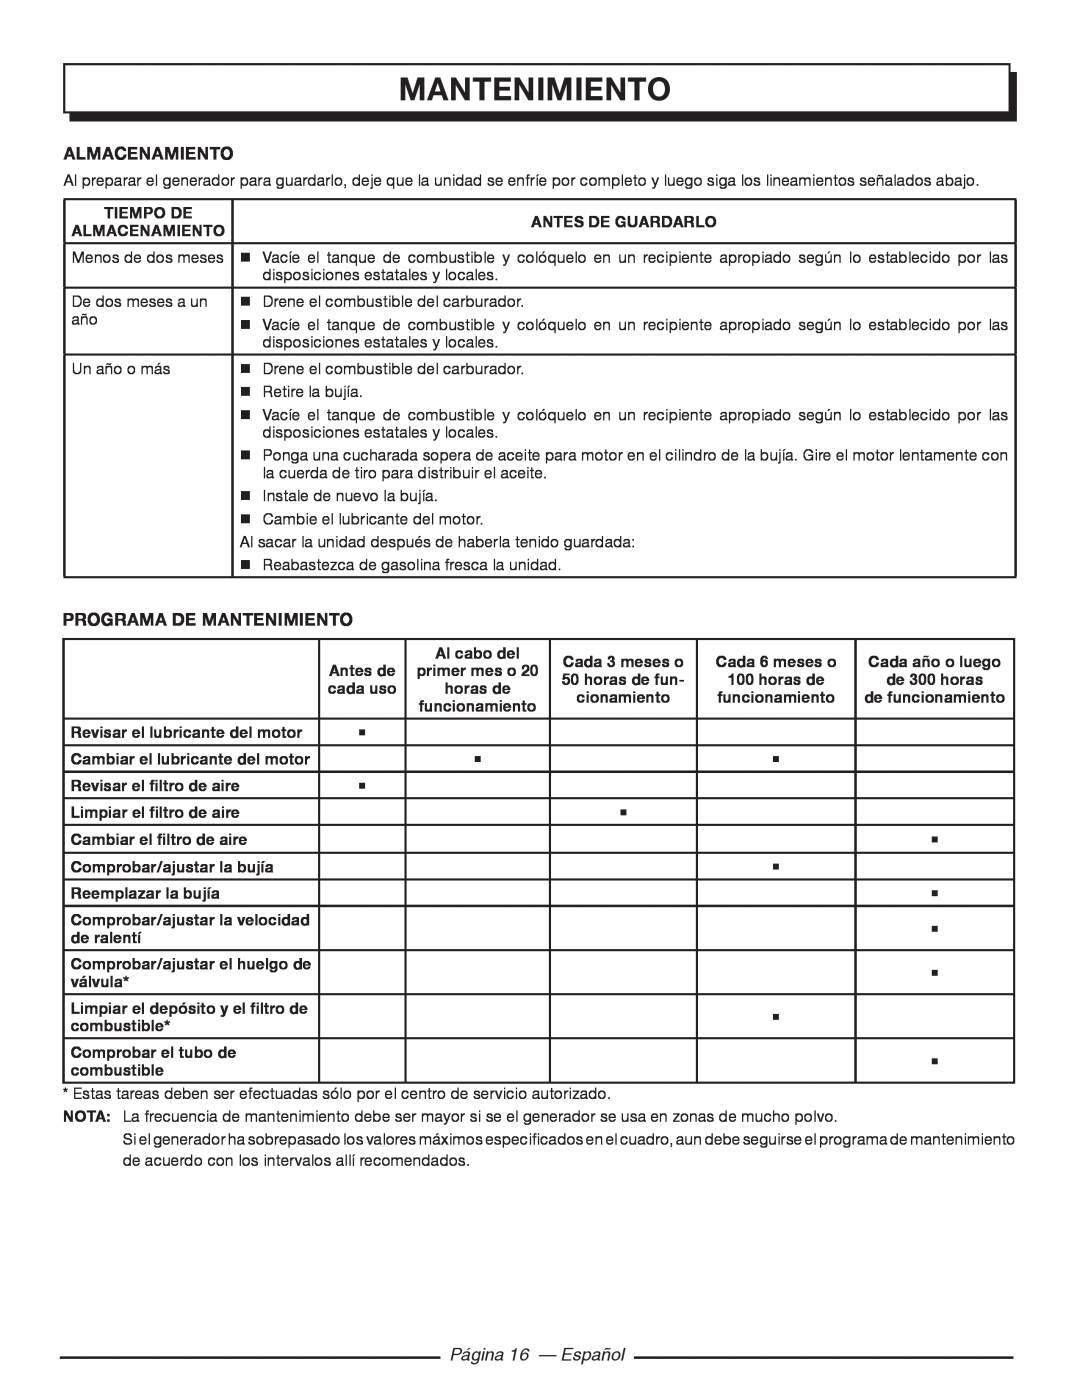 Homelite HGCA5000 manuel dutilisation Almacenamiento, Programa De Mantenimiento, Página 16 - Español 